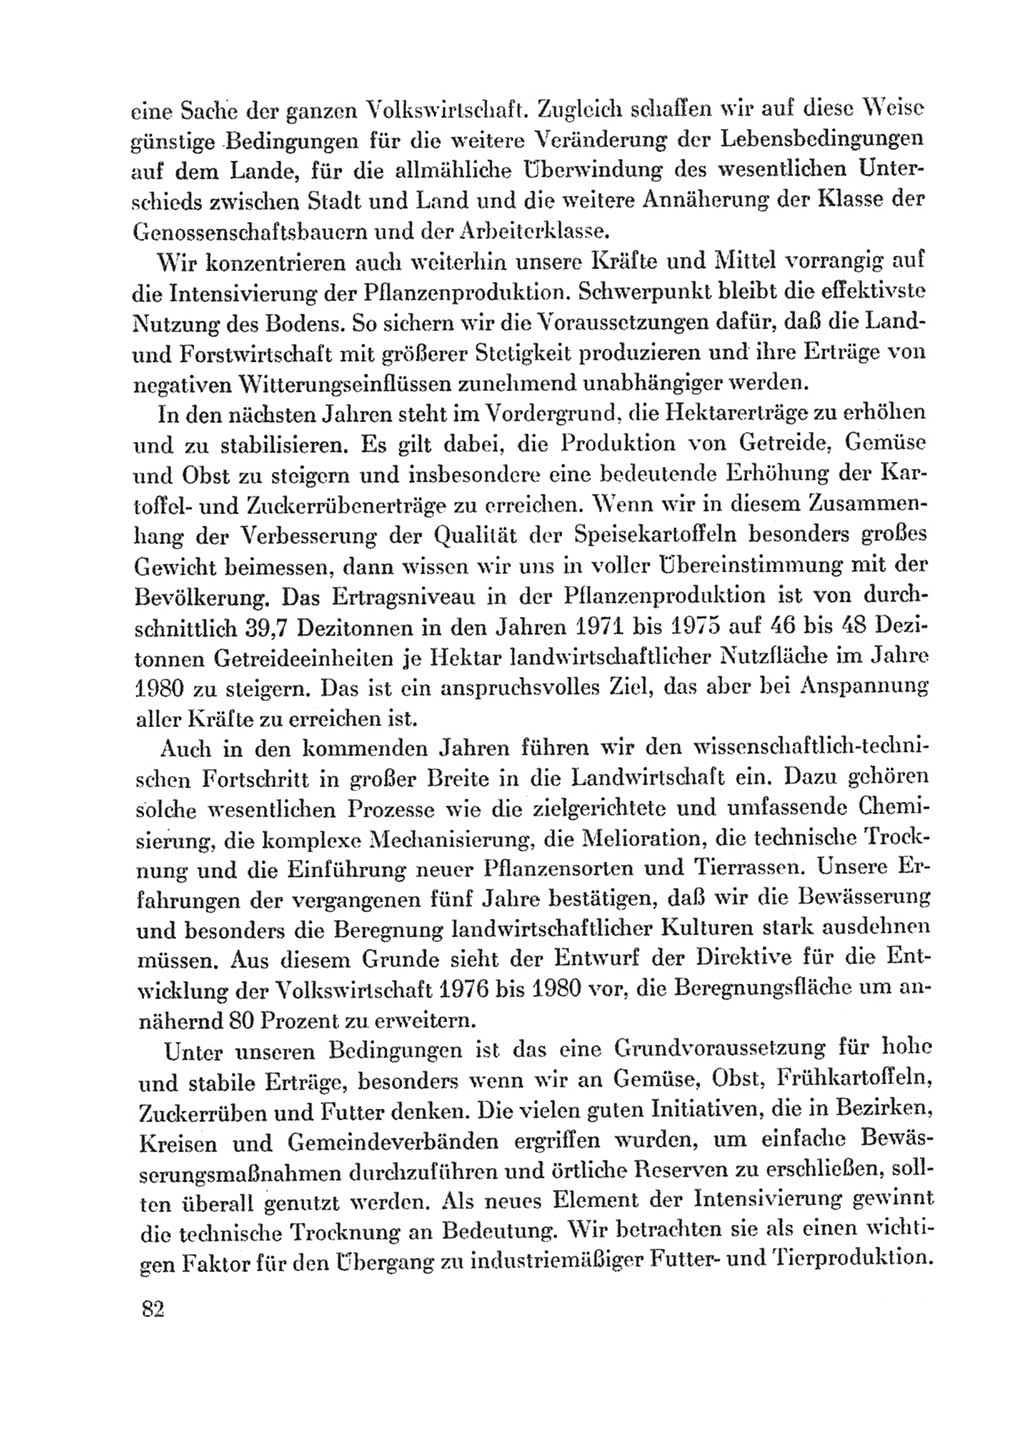 Protokoll der Verhandlungen des Ⅸ. Parteitages der Sozialistischen Einheitspartei Deutschlands (SED) [Deutsche Demokratische Republik (DDR)] 1976, Band 1, Seite 82 (Prot. Verh. Ⅸ. PT SED DDR 1976, Bd. 1, S. 82)